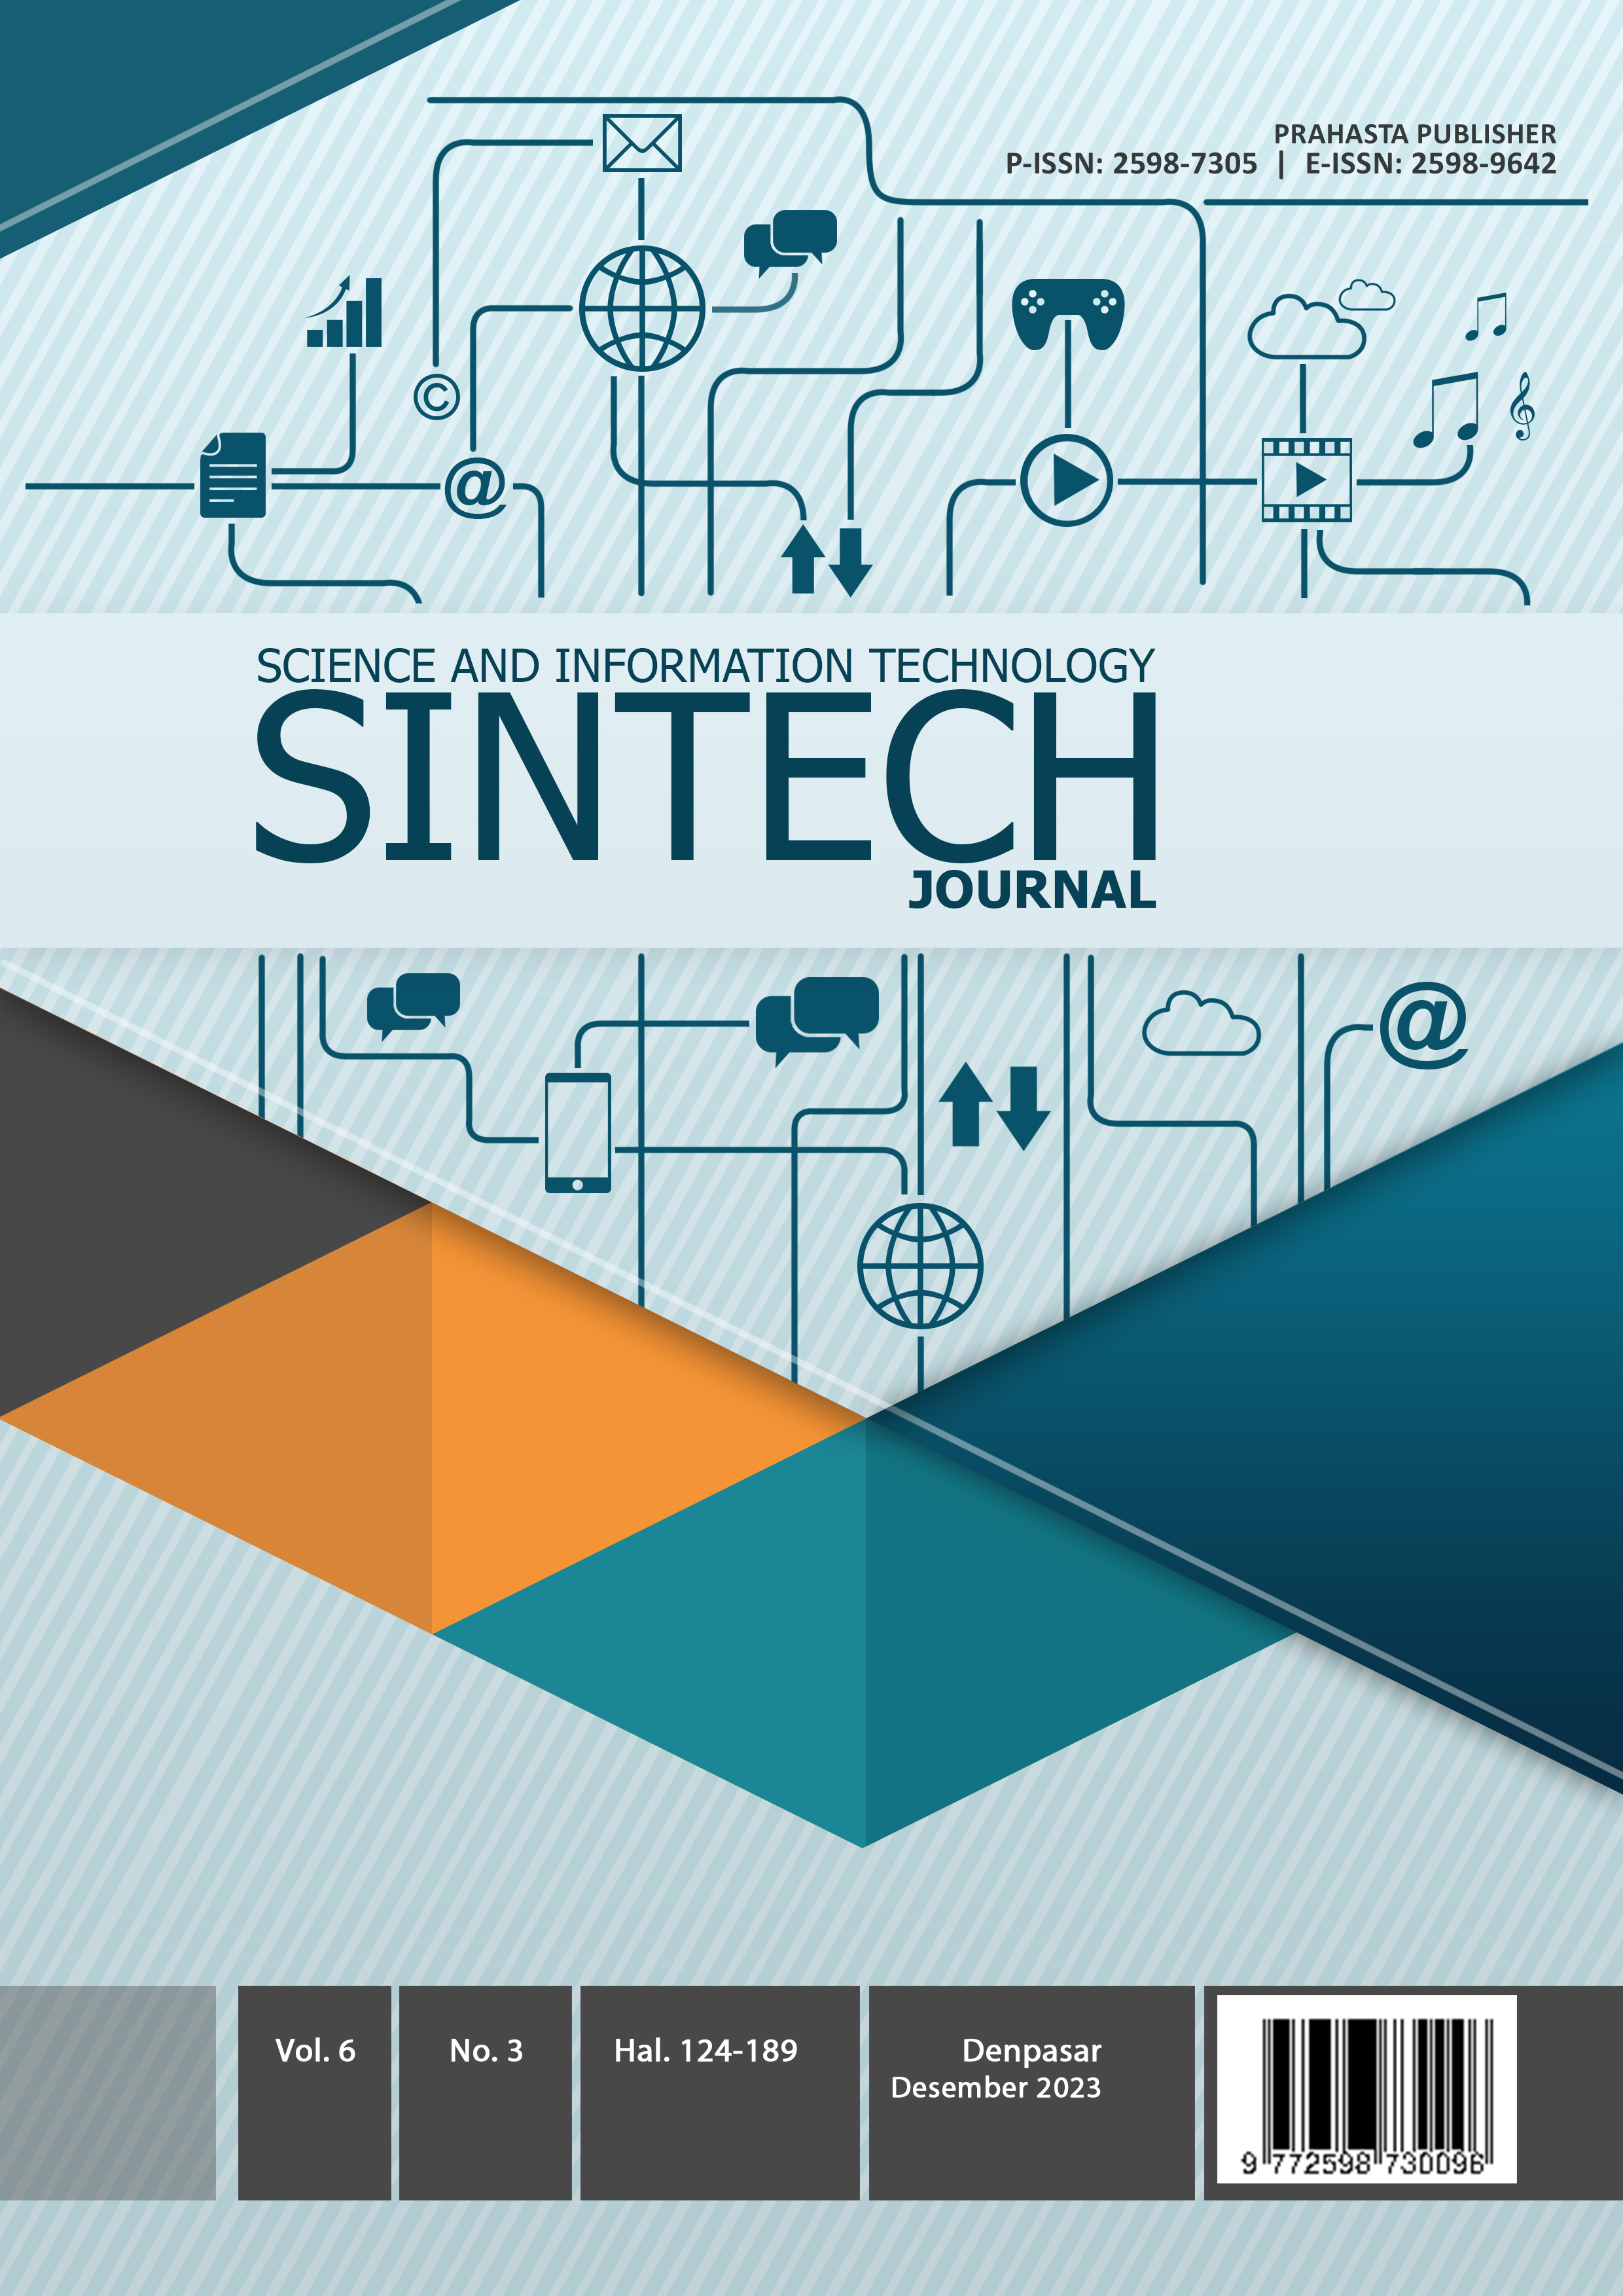 					View Vol. 6 No. 3 (2023): SINTECH Journal Edition December 2023
				